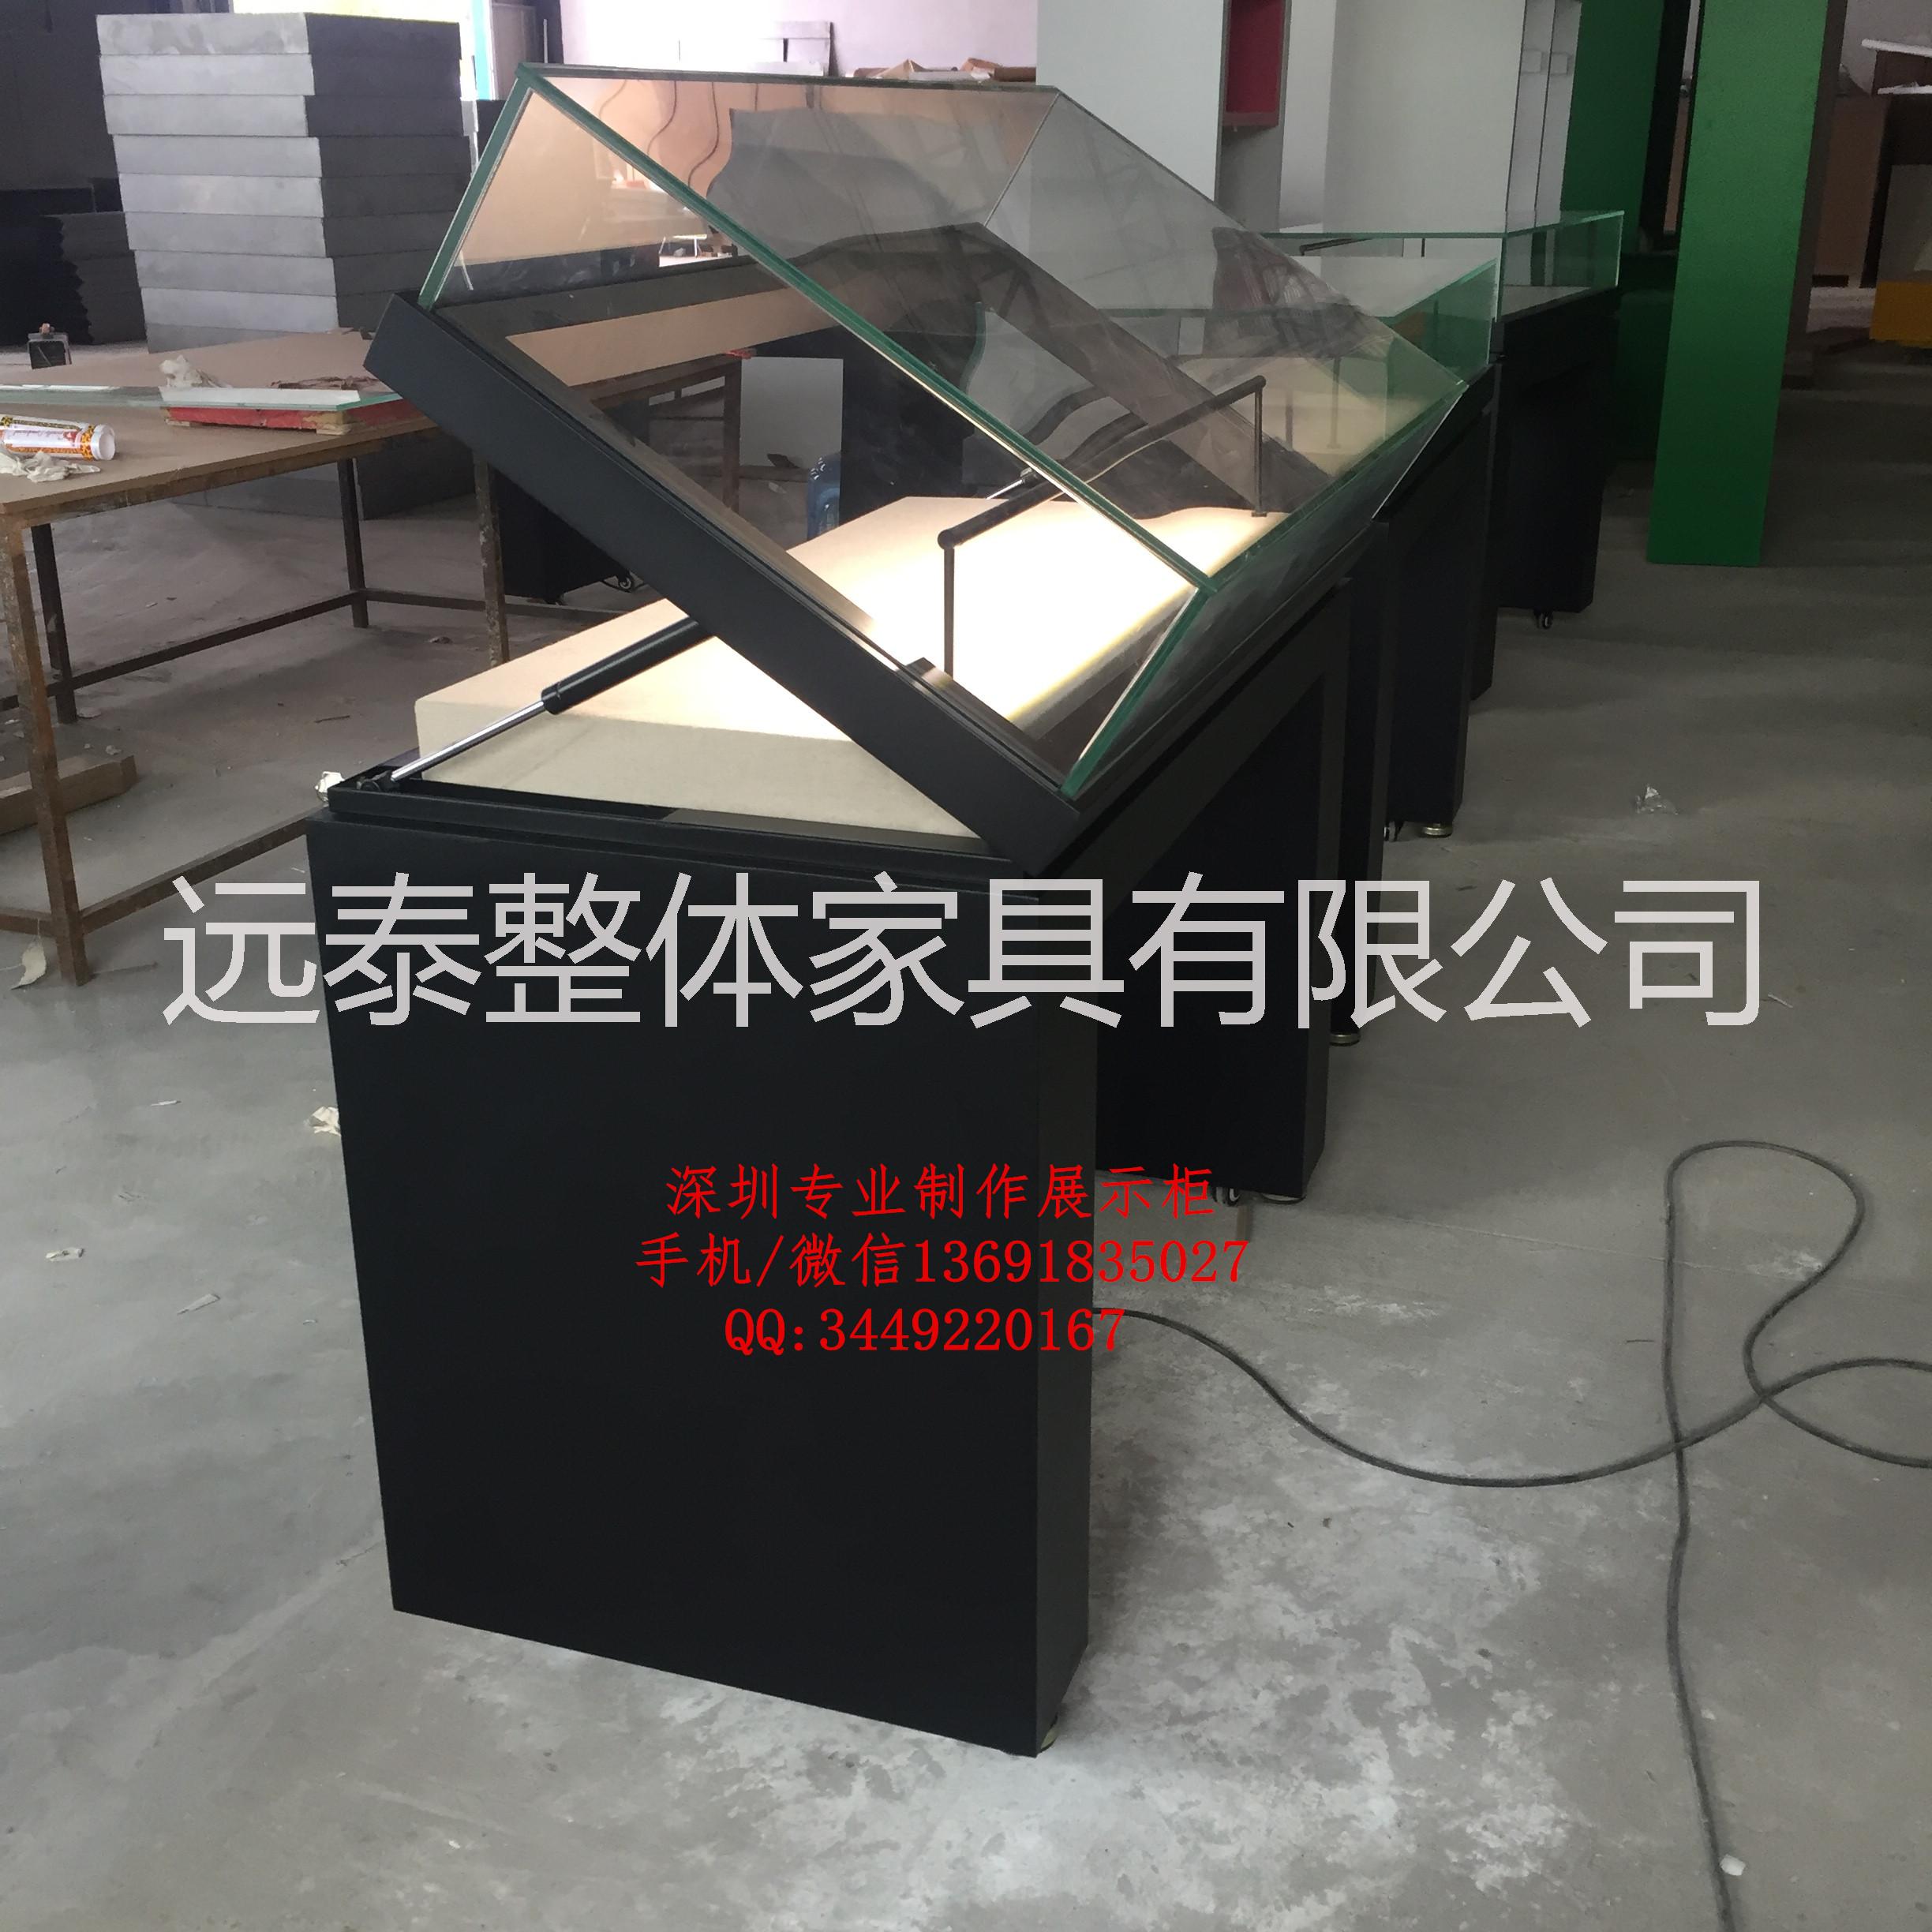 深圳专业制作手动平移门博物馆展柜图片